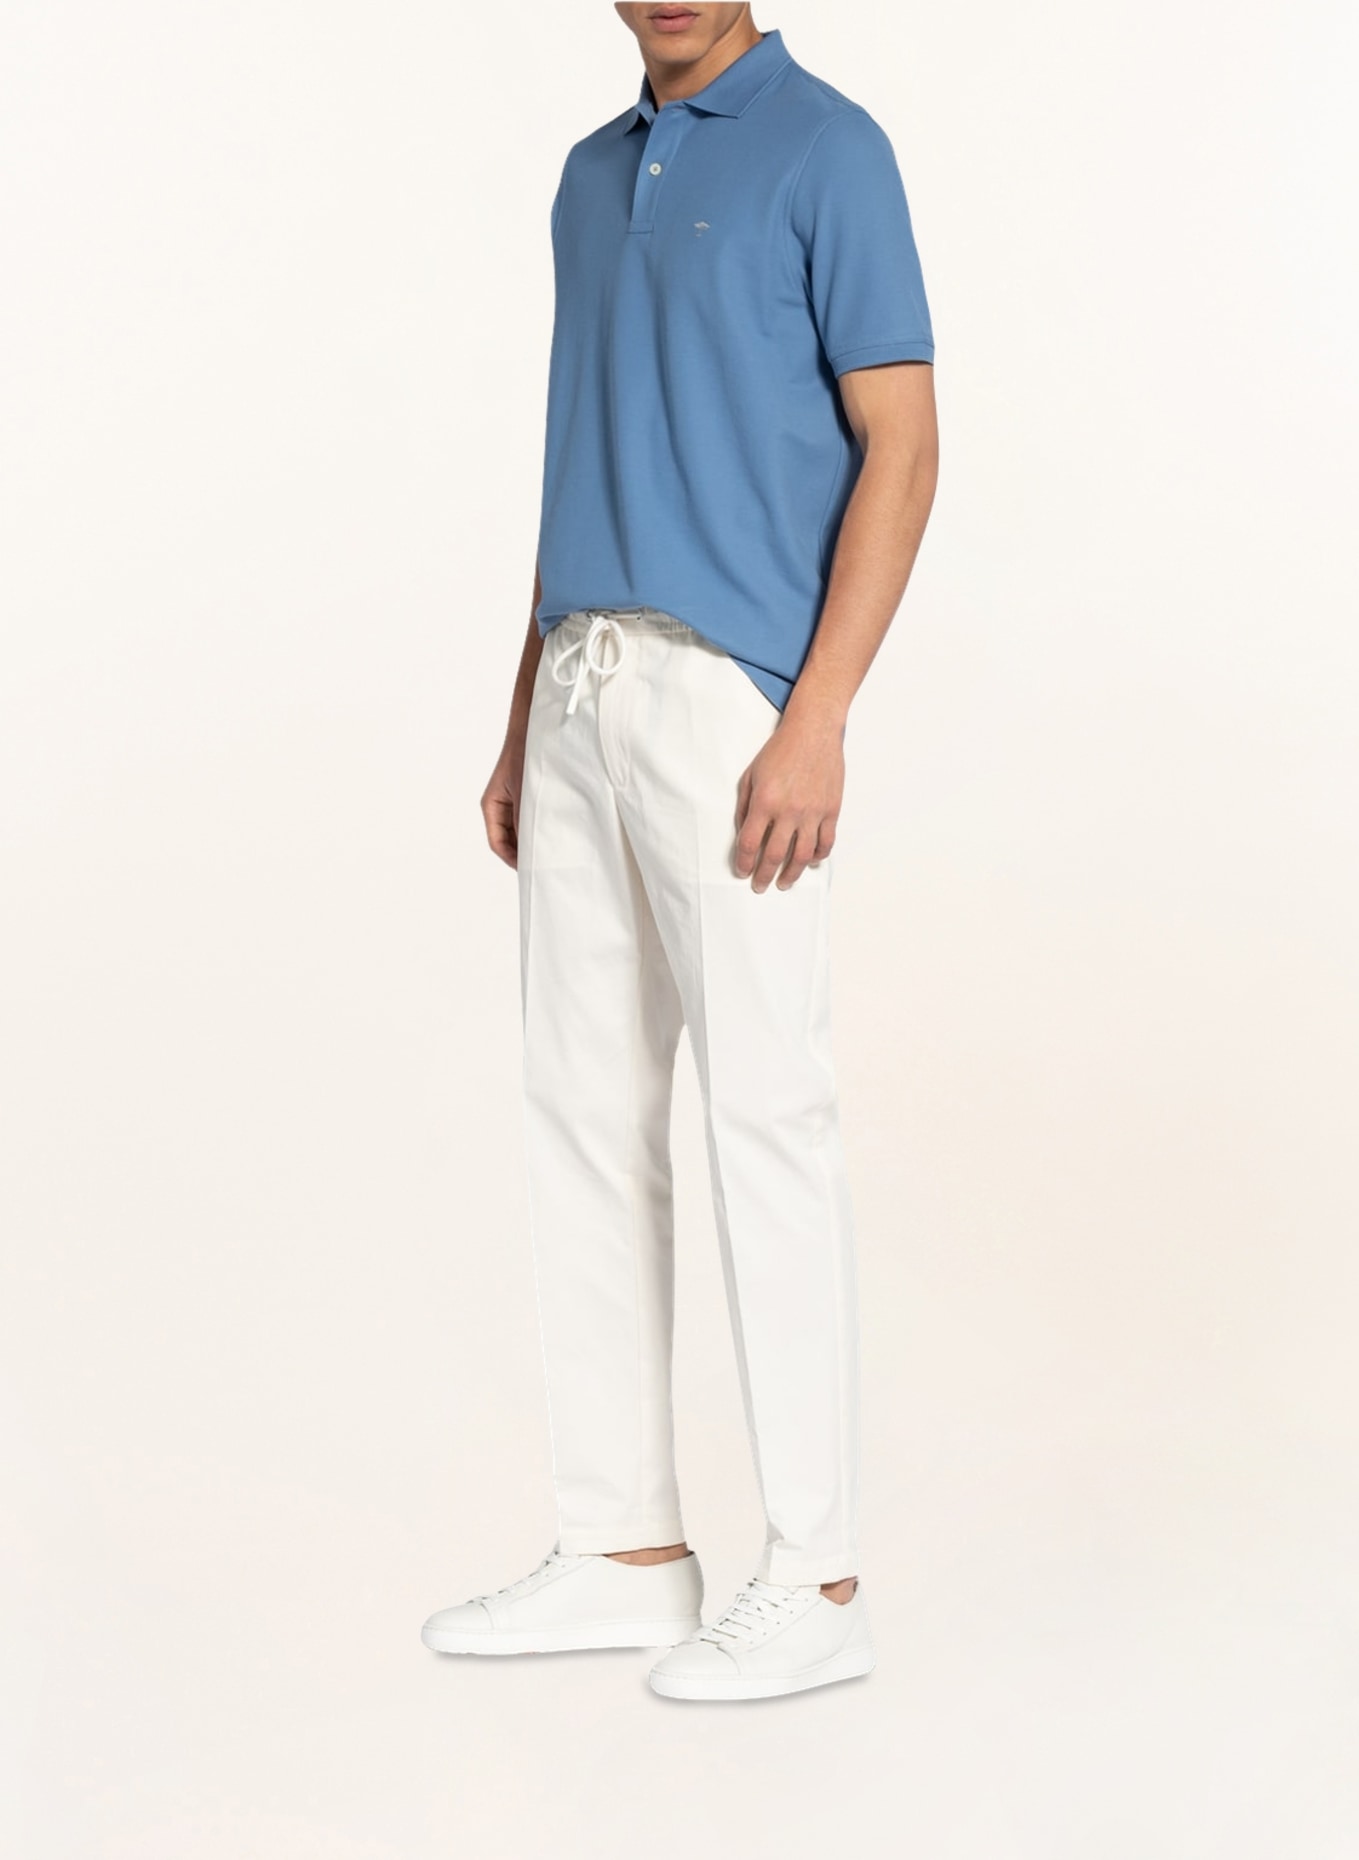 FYNCH-HATTON Piqué-Poloshirt, Farbe: BLAU (Bild 2)